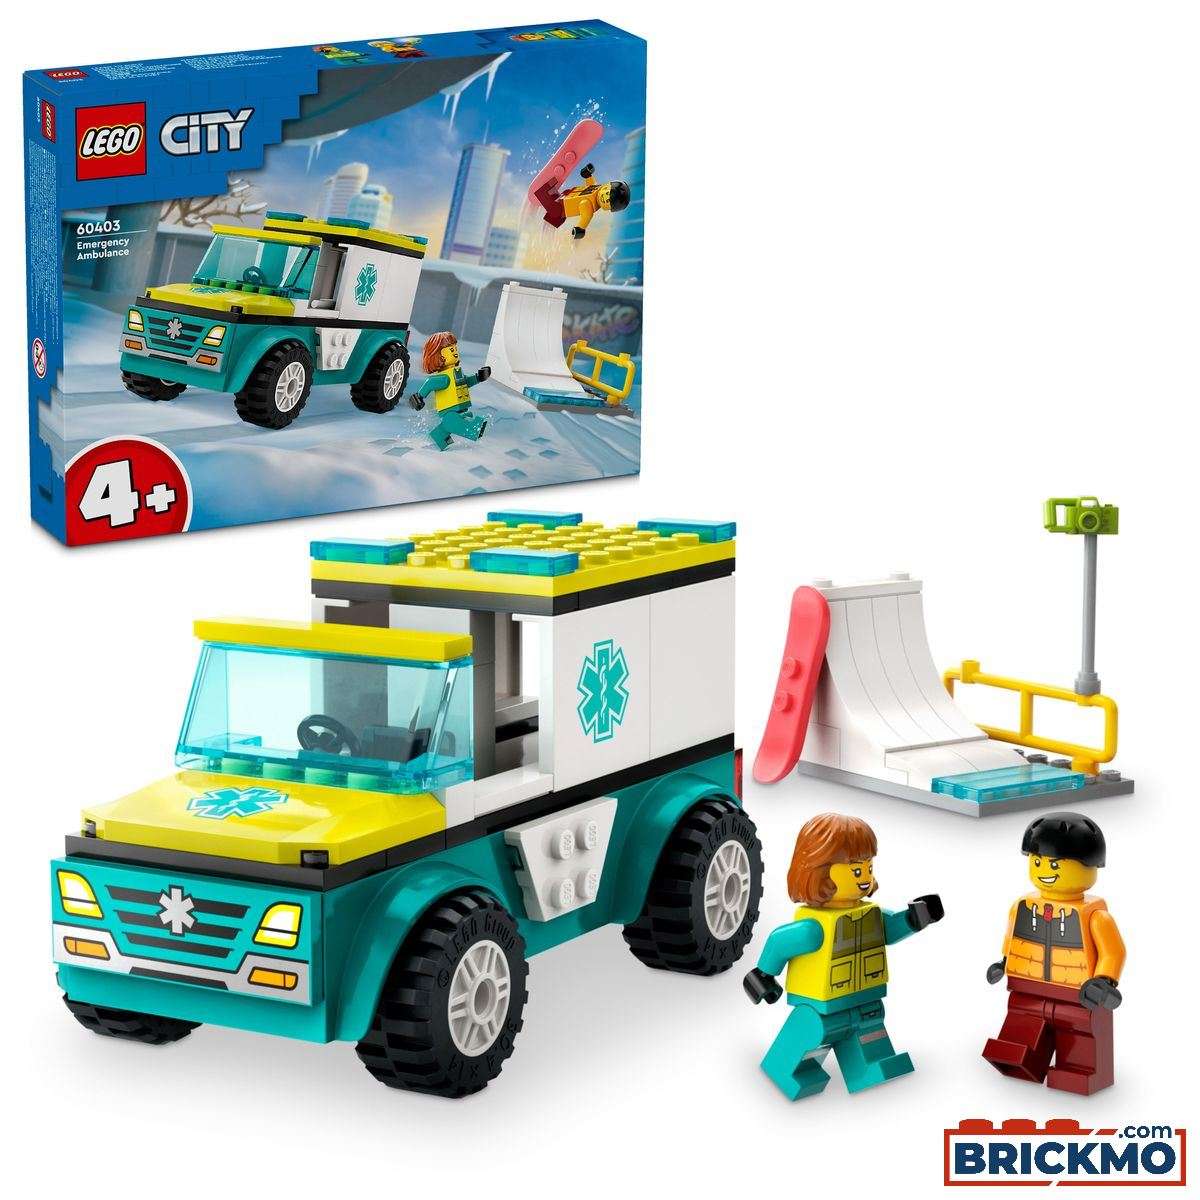 LEGO City Fahrzeuge 60403 Rettungswagen und Snowboarder 60403